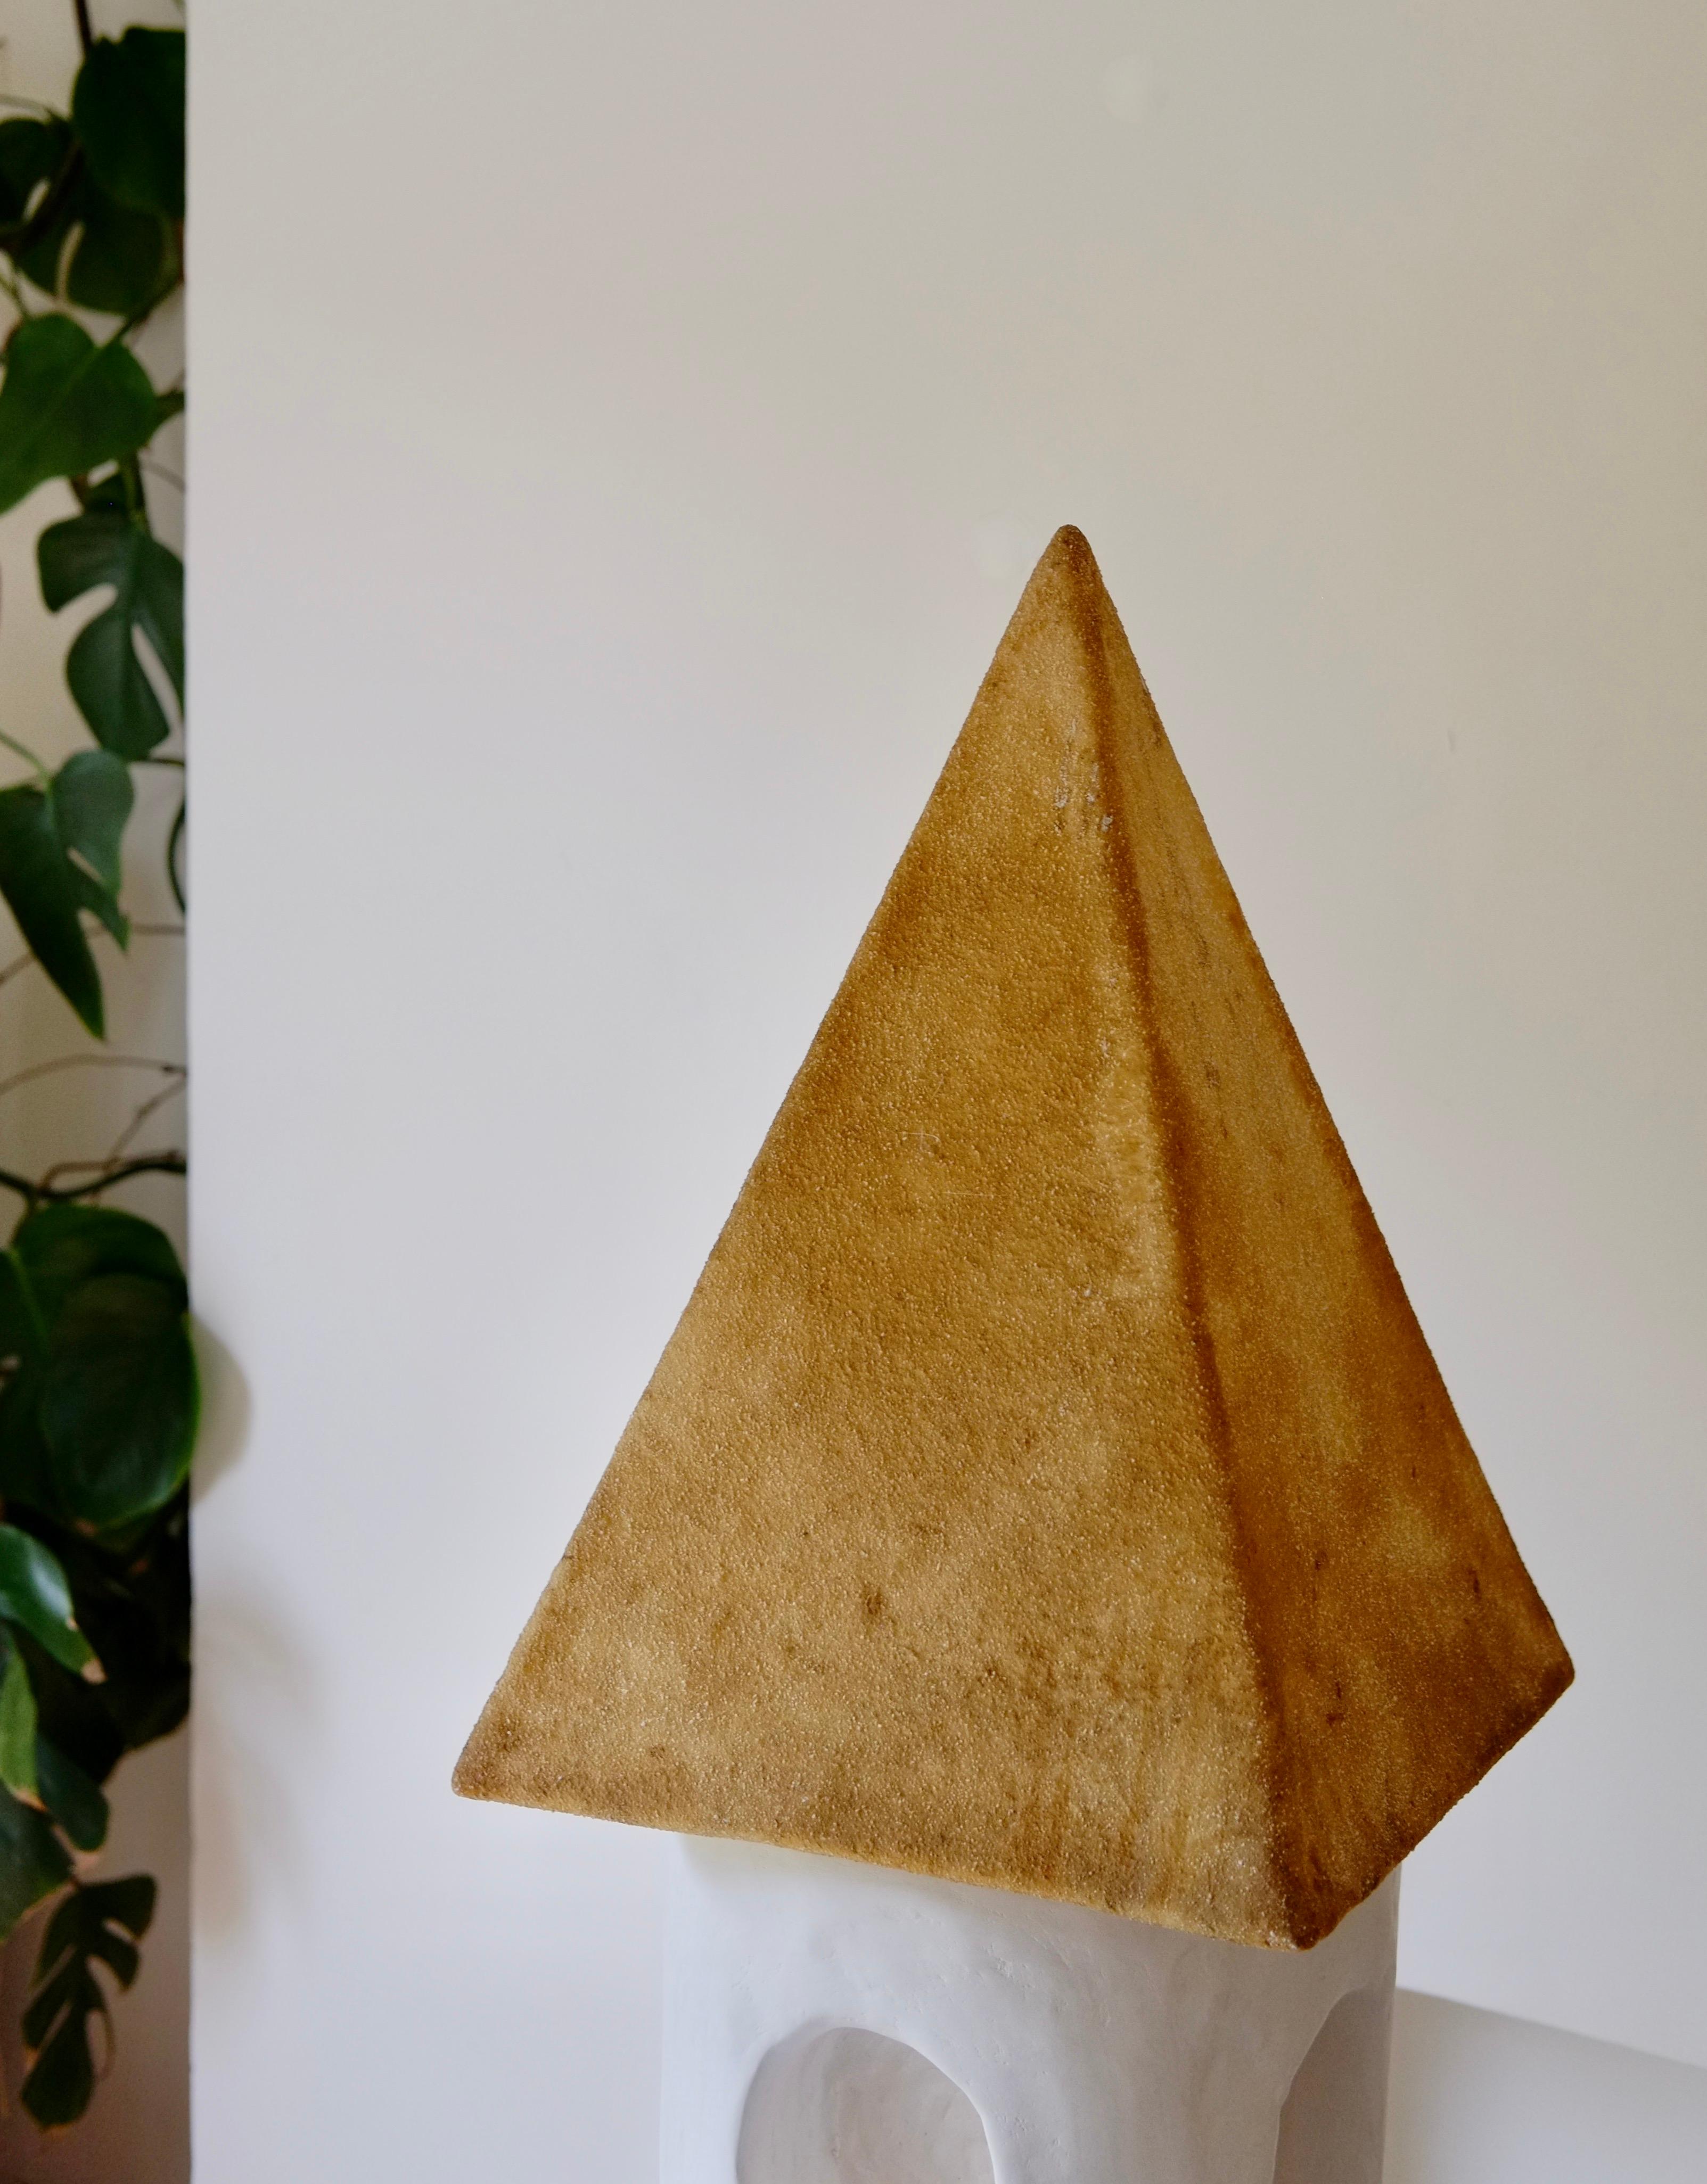 Une grande lampe pyramidale conçue par André Cazenave pour la société italienne Singleton dans les années 1970. Célèbre pour ses lampes de roche communes, il est très rare de trouver ce modèle de pyramide.

Fabriquée en fibre de verre, la lampe